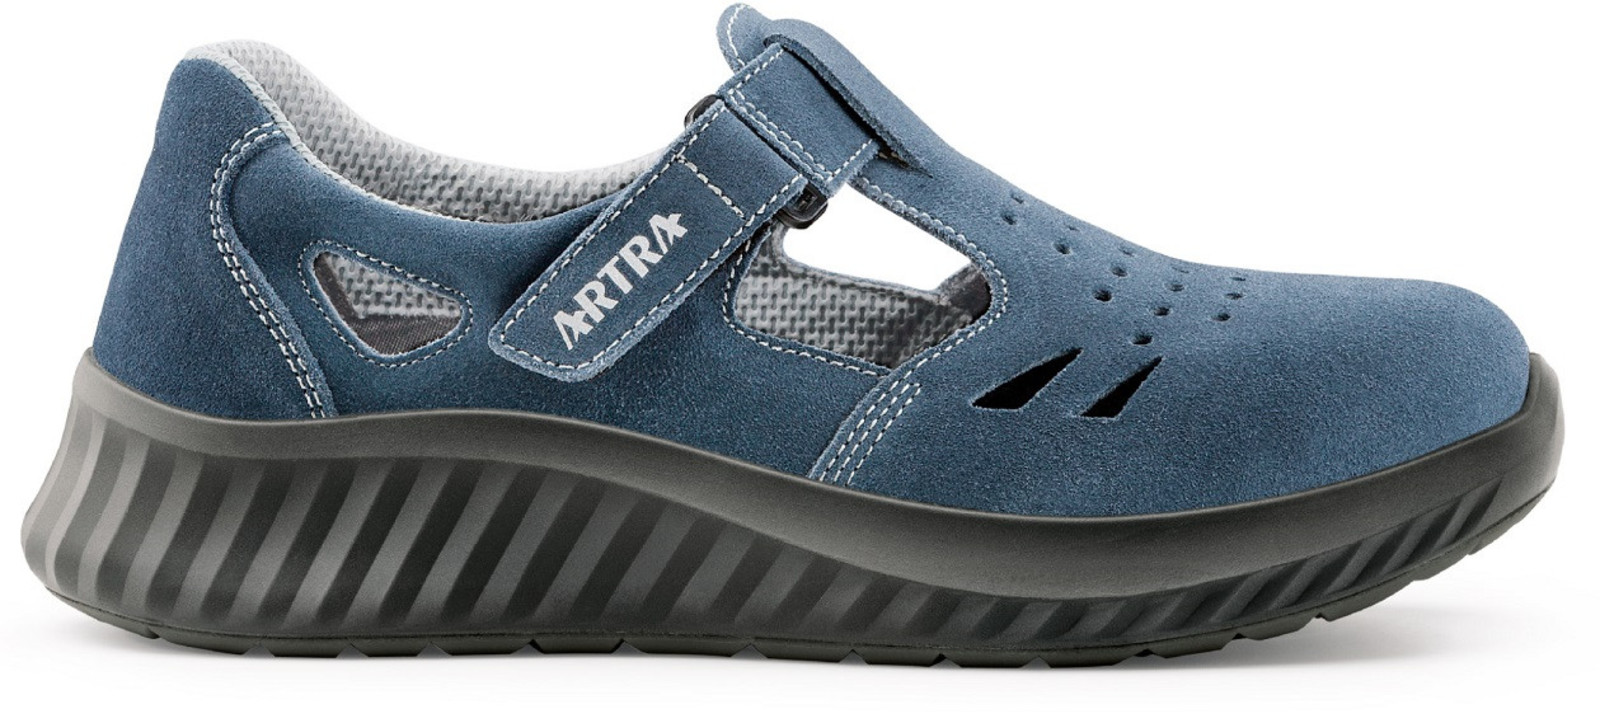 Bezpečnostné sandále Artra Armen 9007 9360 S1 - veľkosť: 48, farba: modrá